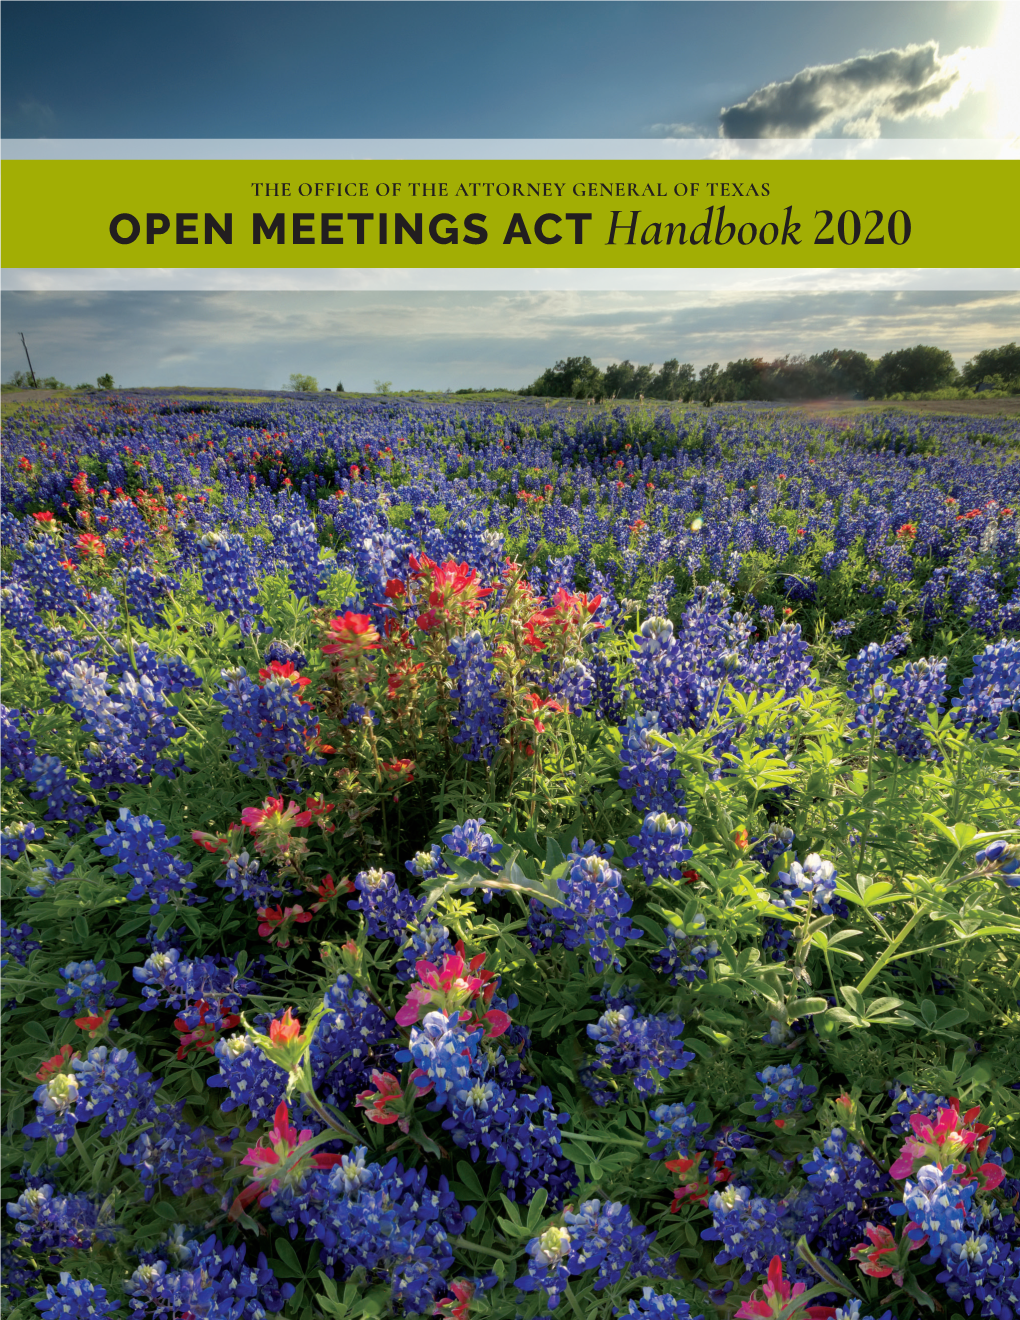 OPEN MEETINGS ACT Handbook 2020